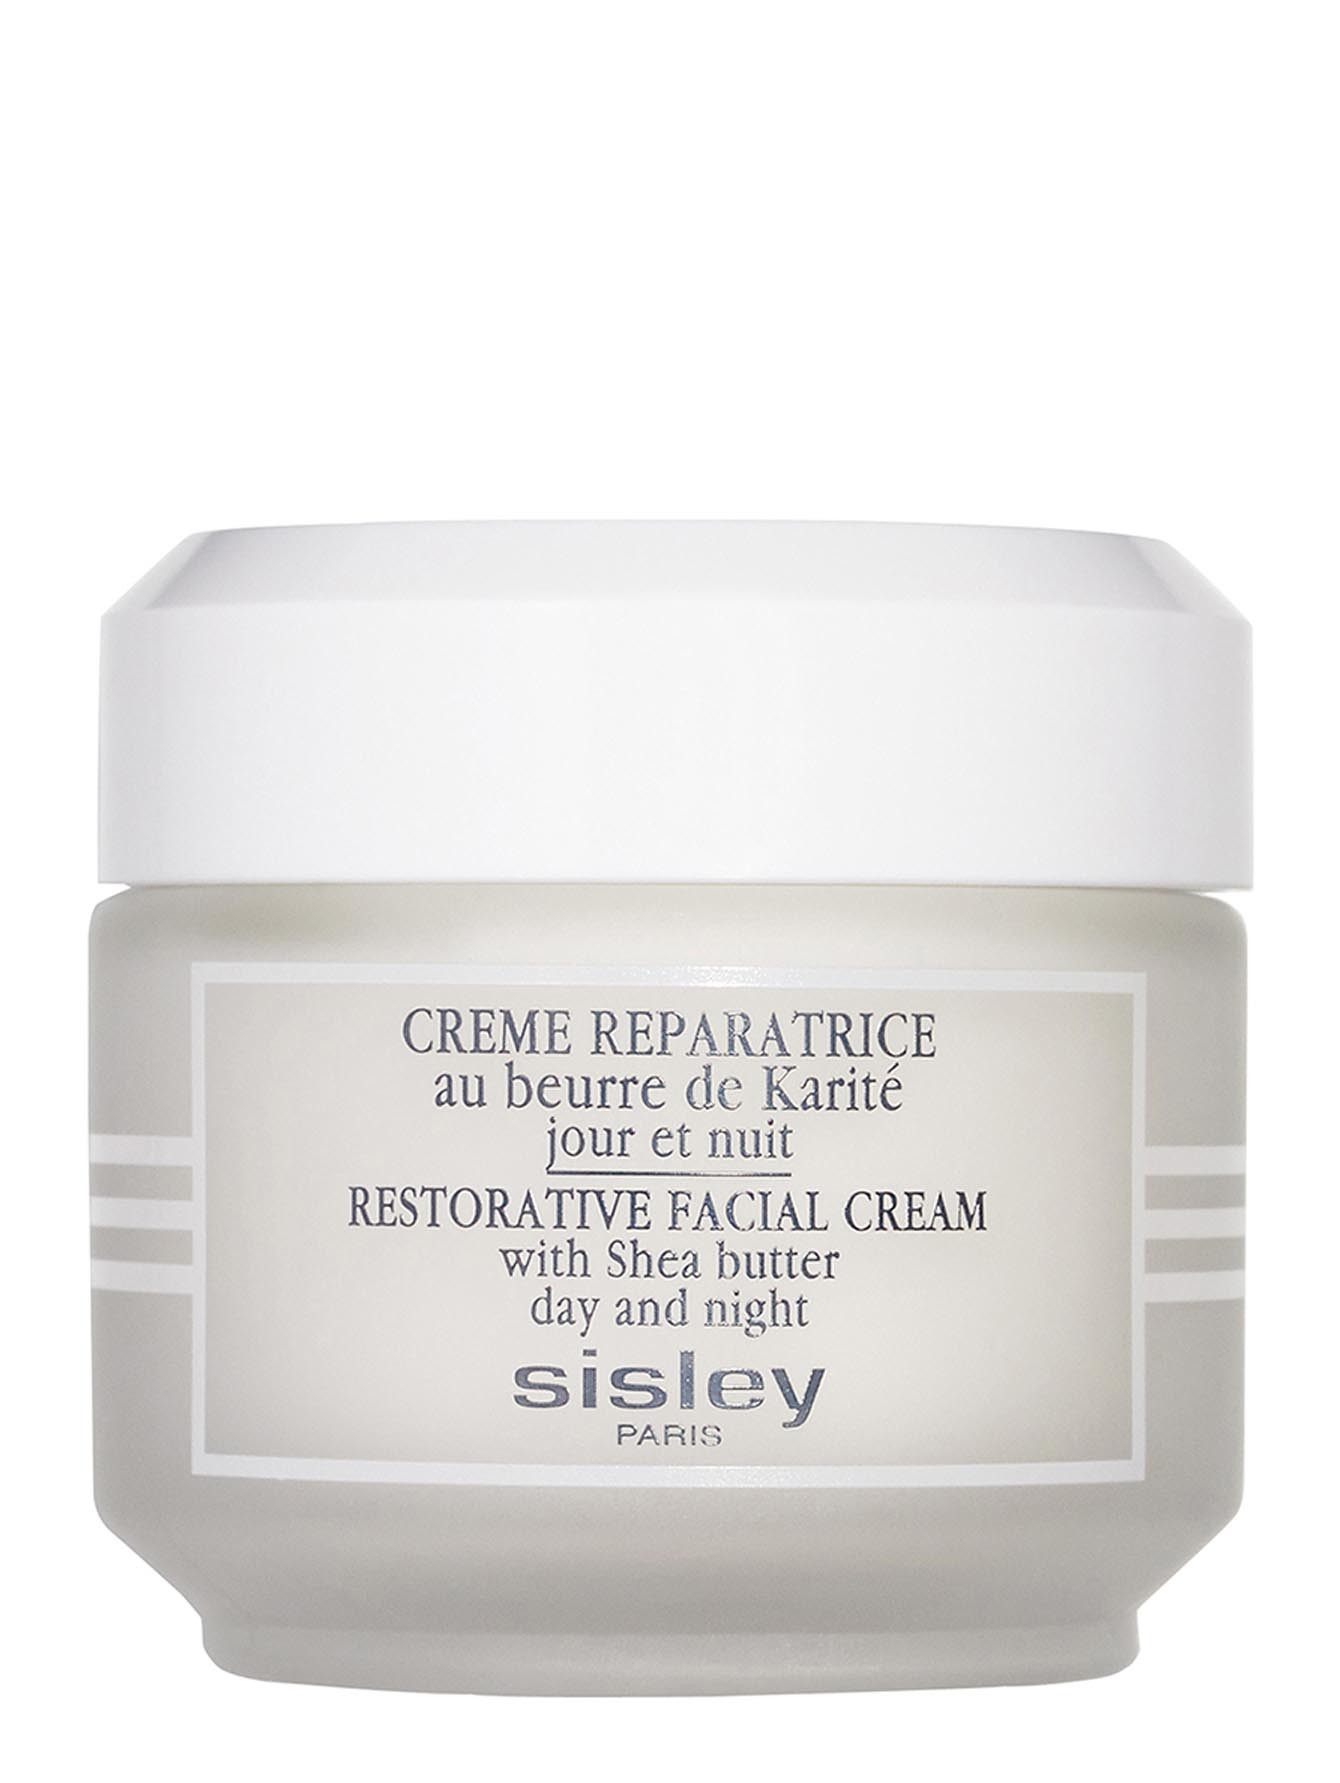 Крем восстанавливающий - Restorative facial cream, 50ml - Общий вид